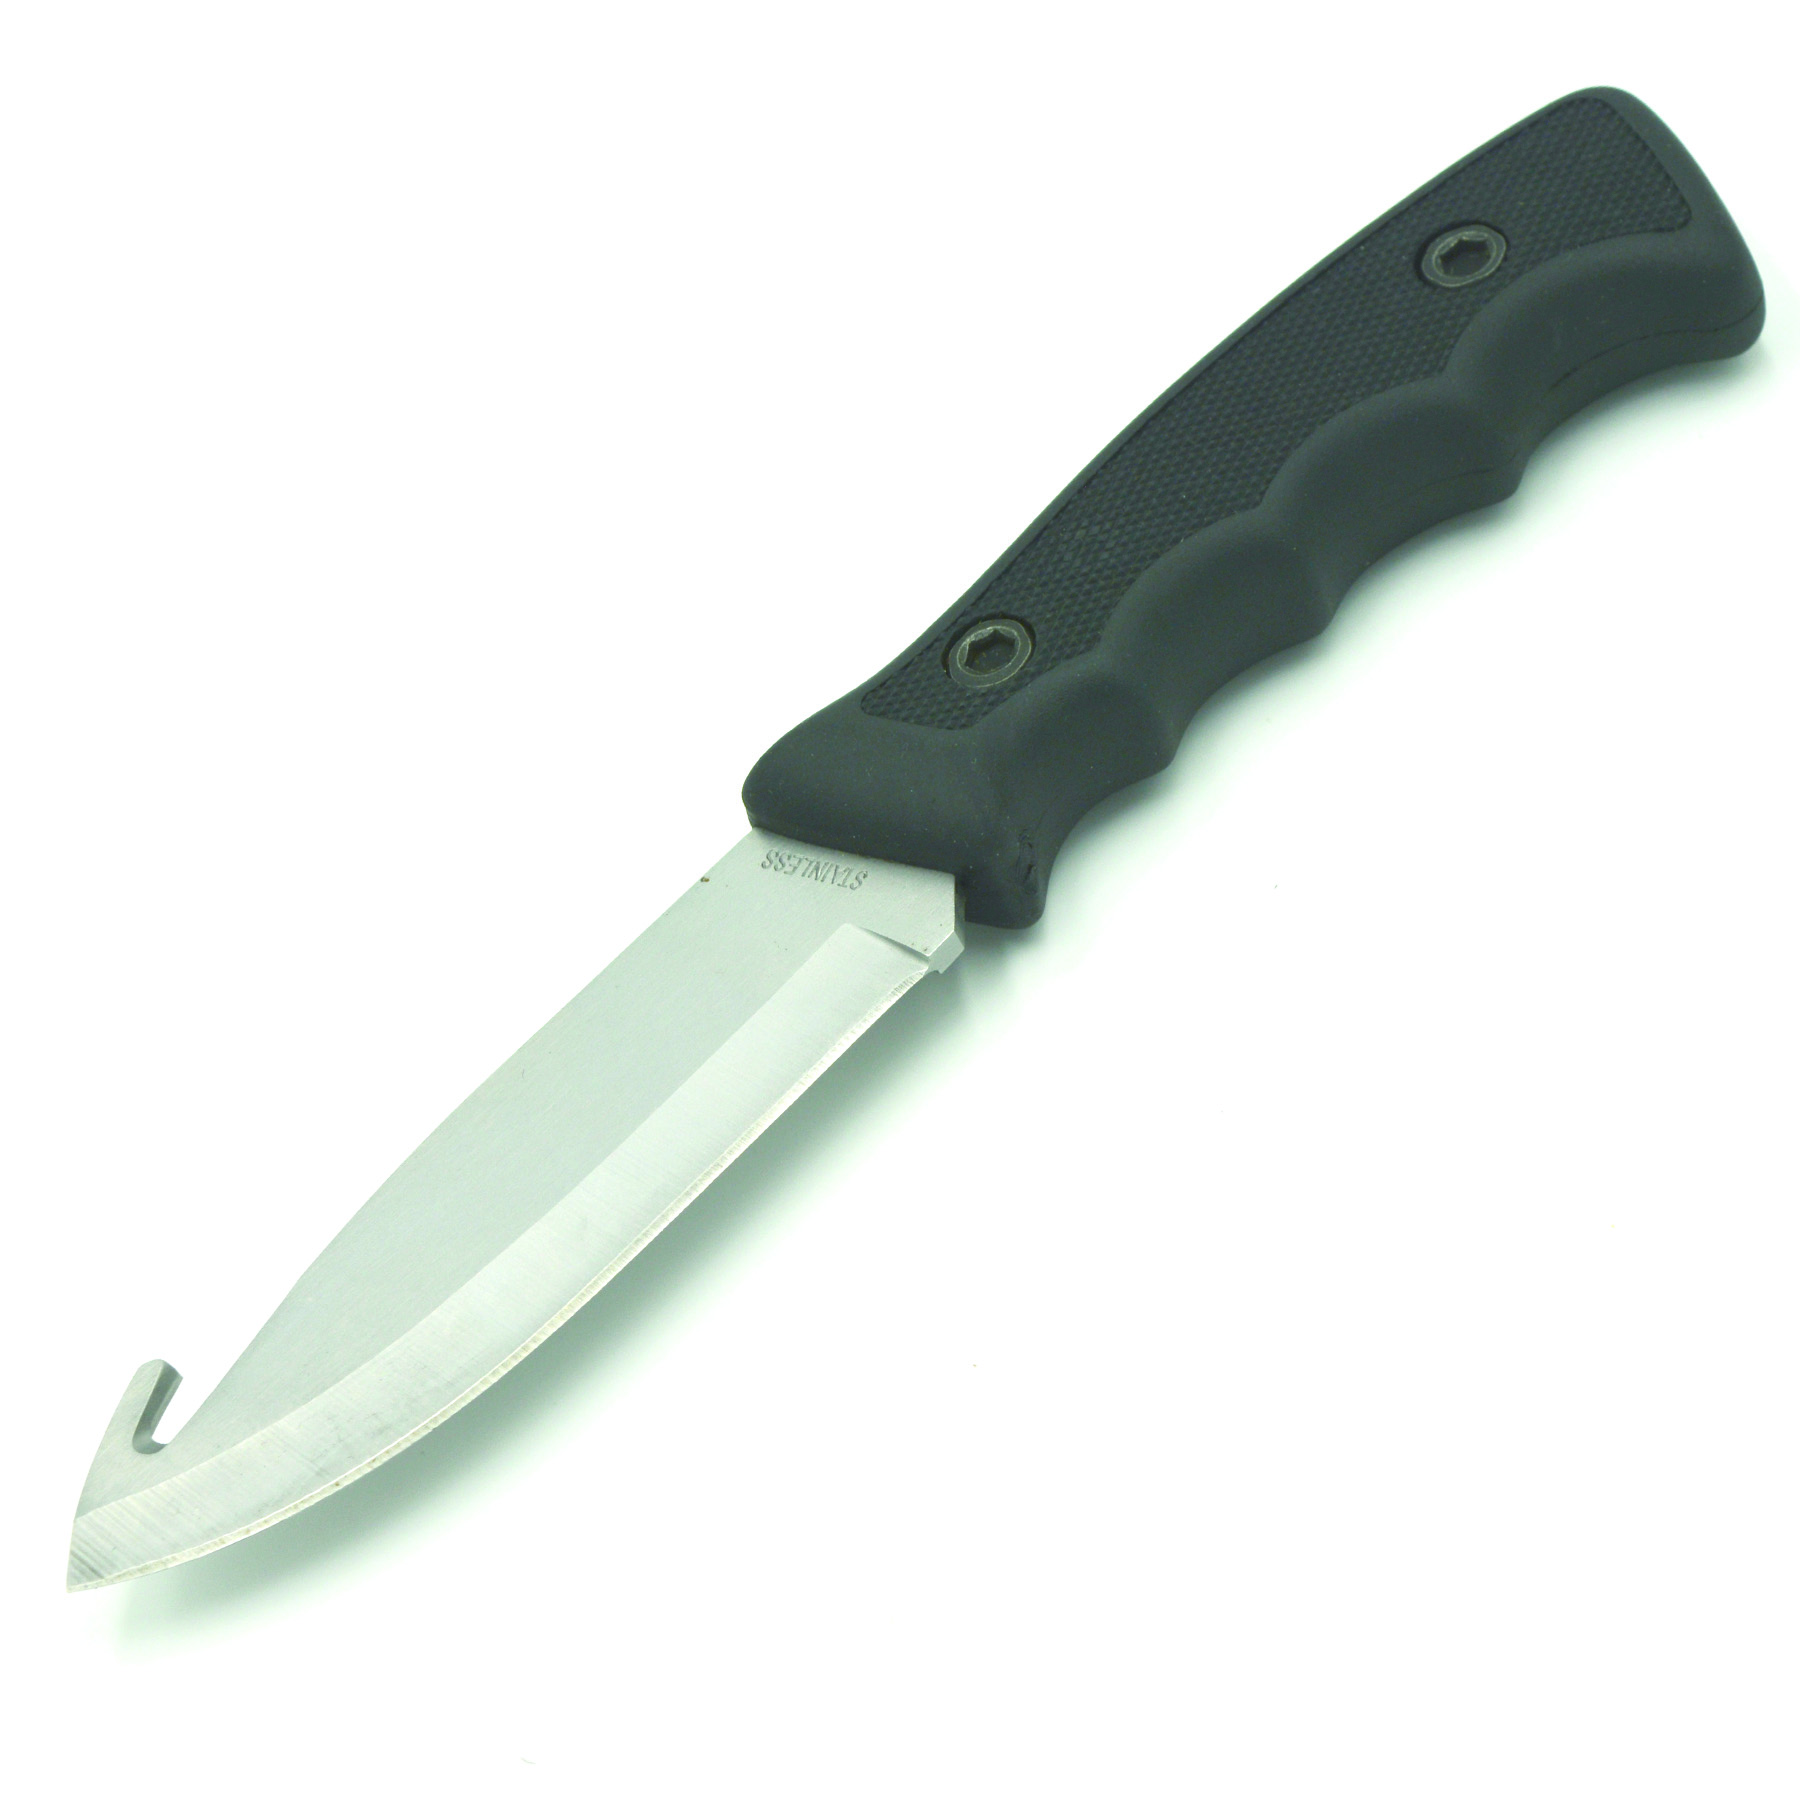 Zenport Couteau de chasse 14032A 4,2 pouces 440C lame en acier inoxydable, crochet en boyau, gaine, 9 pouces de long